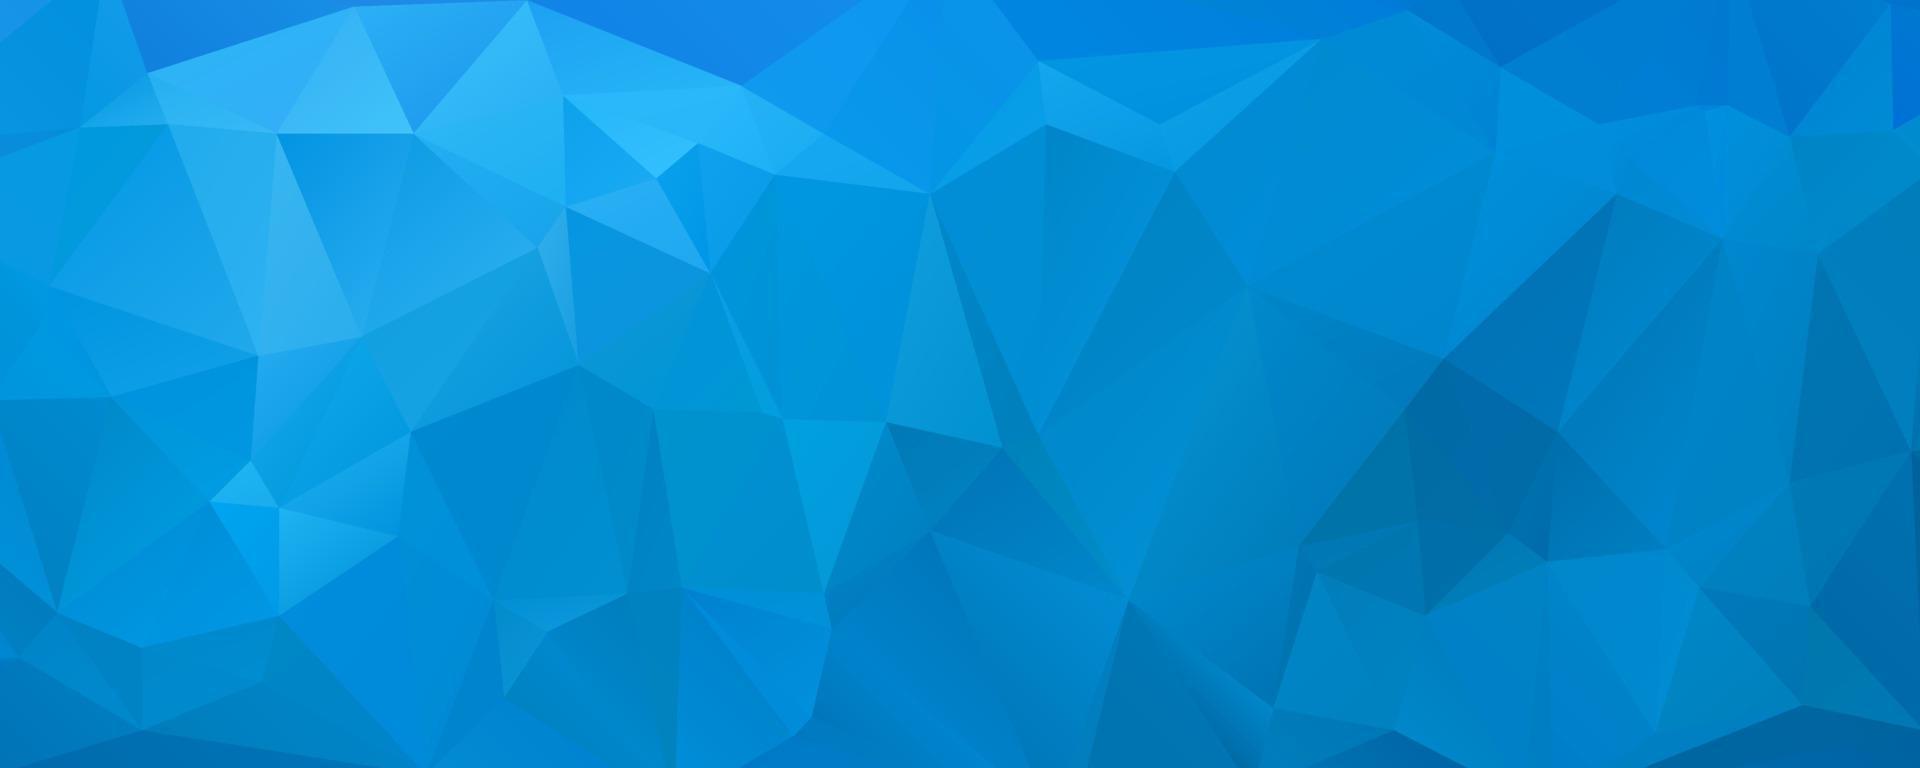 sfondo blu mosaico poligonale, modelli di design creativo vettore